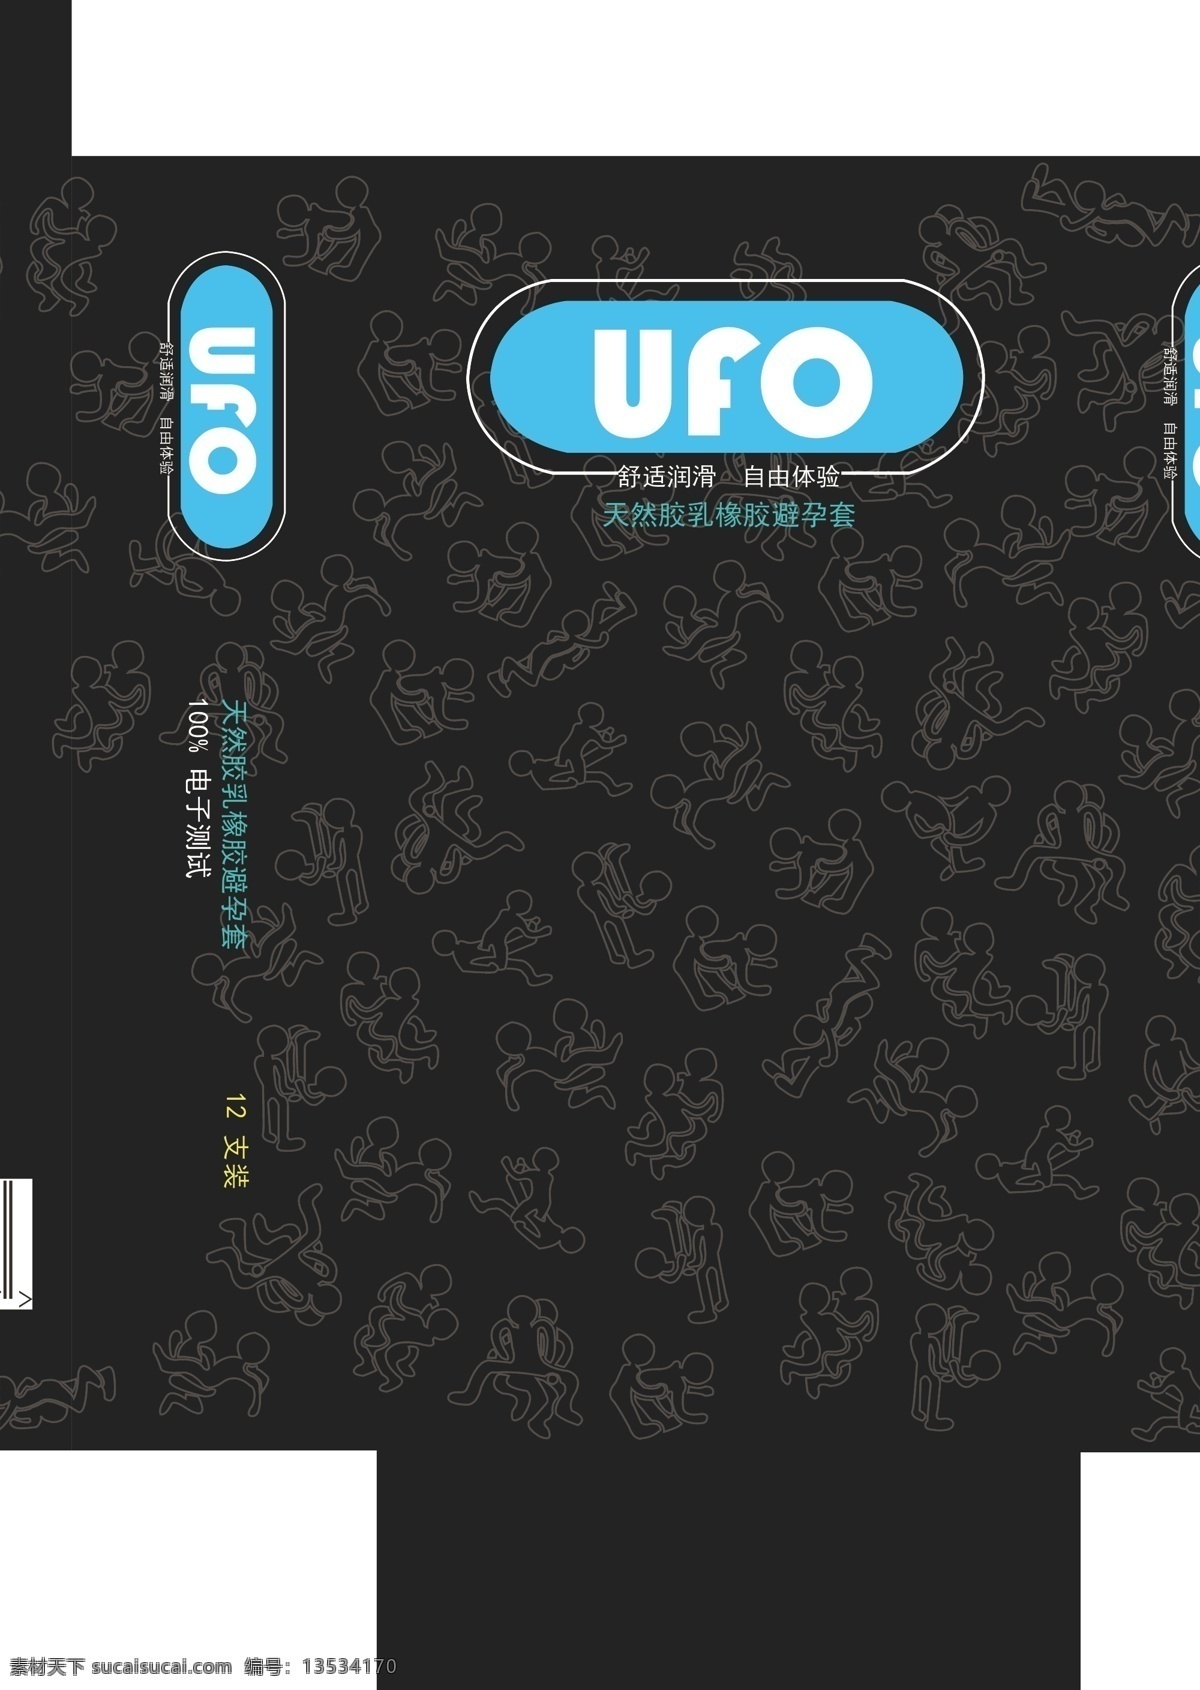 避孕套 内包装 ufo 包装设计 矢量图 品牌包装设计 矢量图包装 小小动作 原创设计 其他原创设计